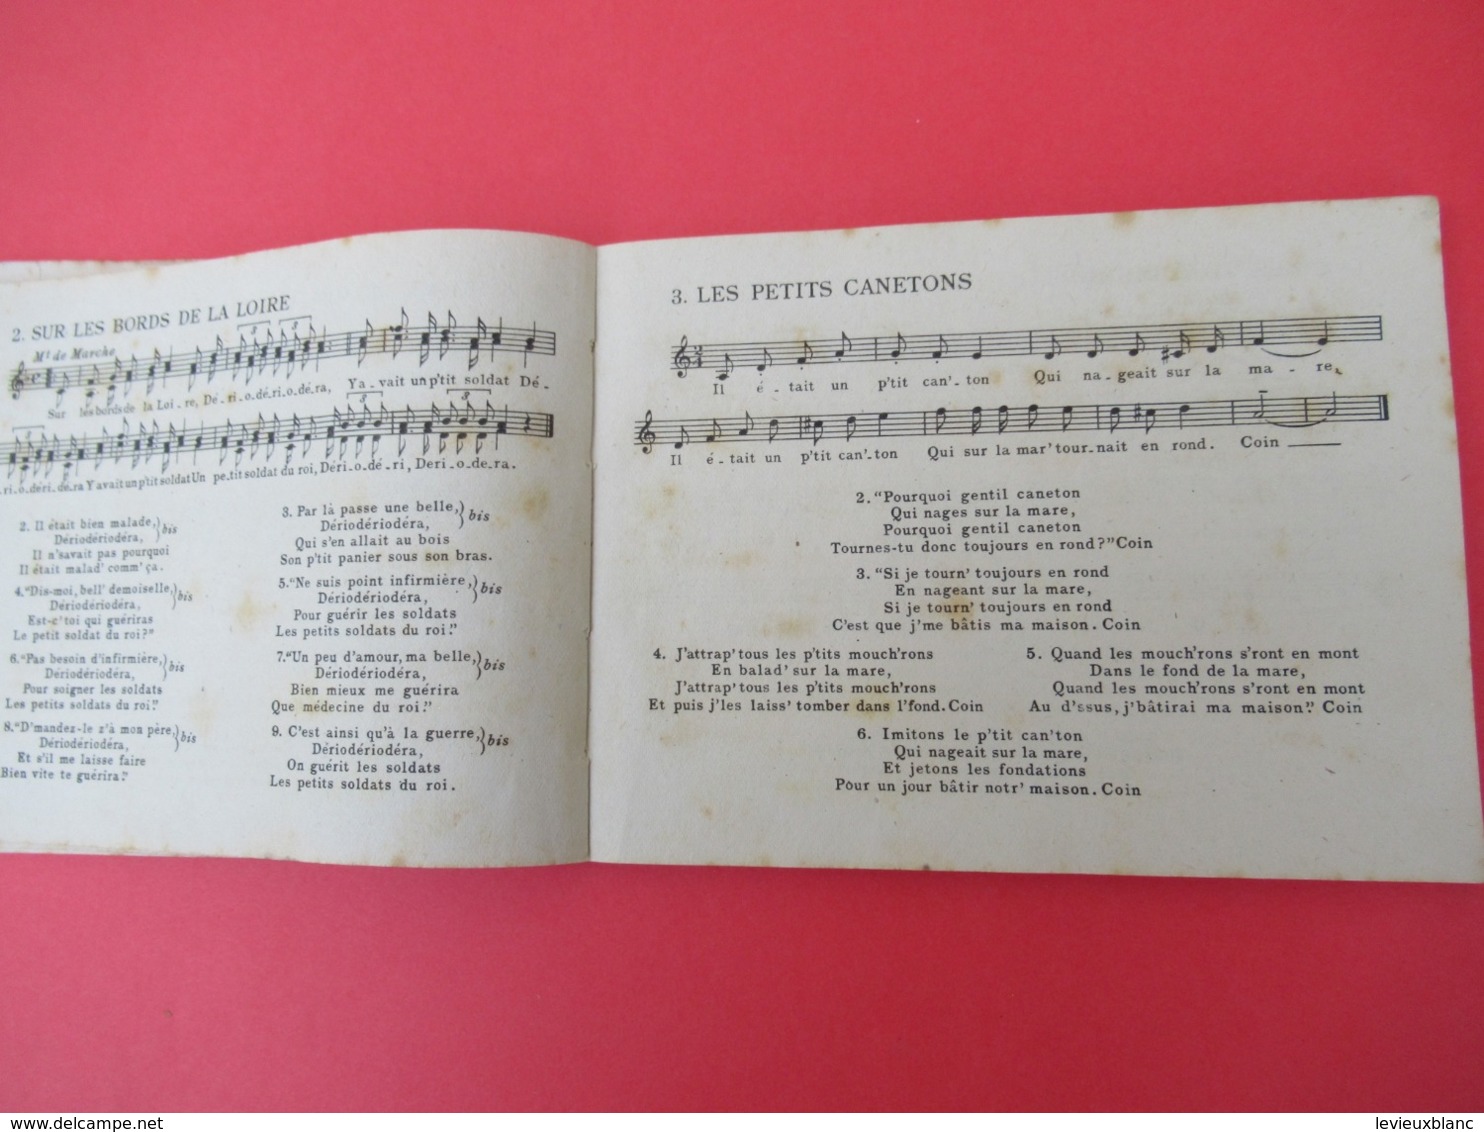 Livre De Chants / JOIES/ Chansons Inédites De Francine COCKENPOT/Ed Du Seuil//1950           PART273 - Otros & Sin Clasificación